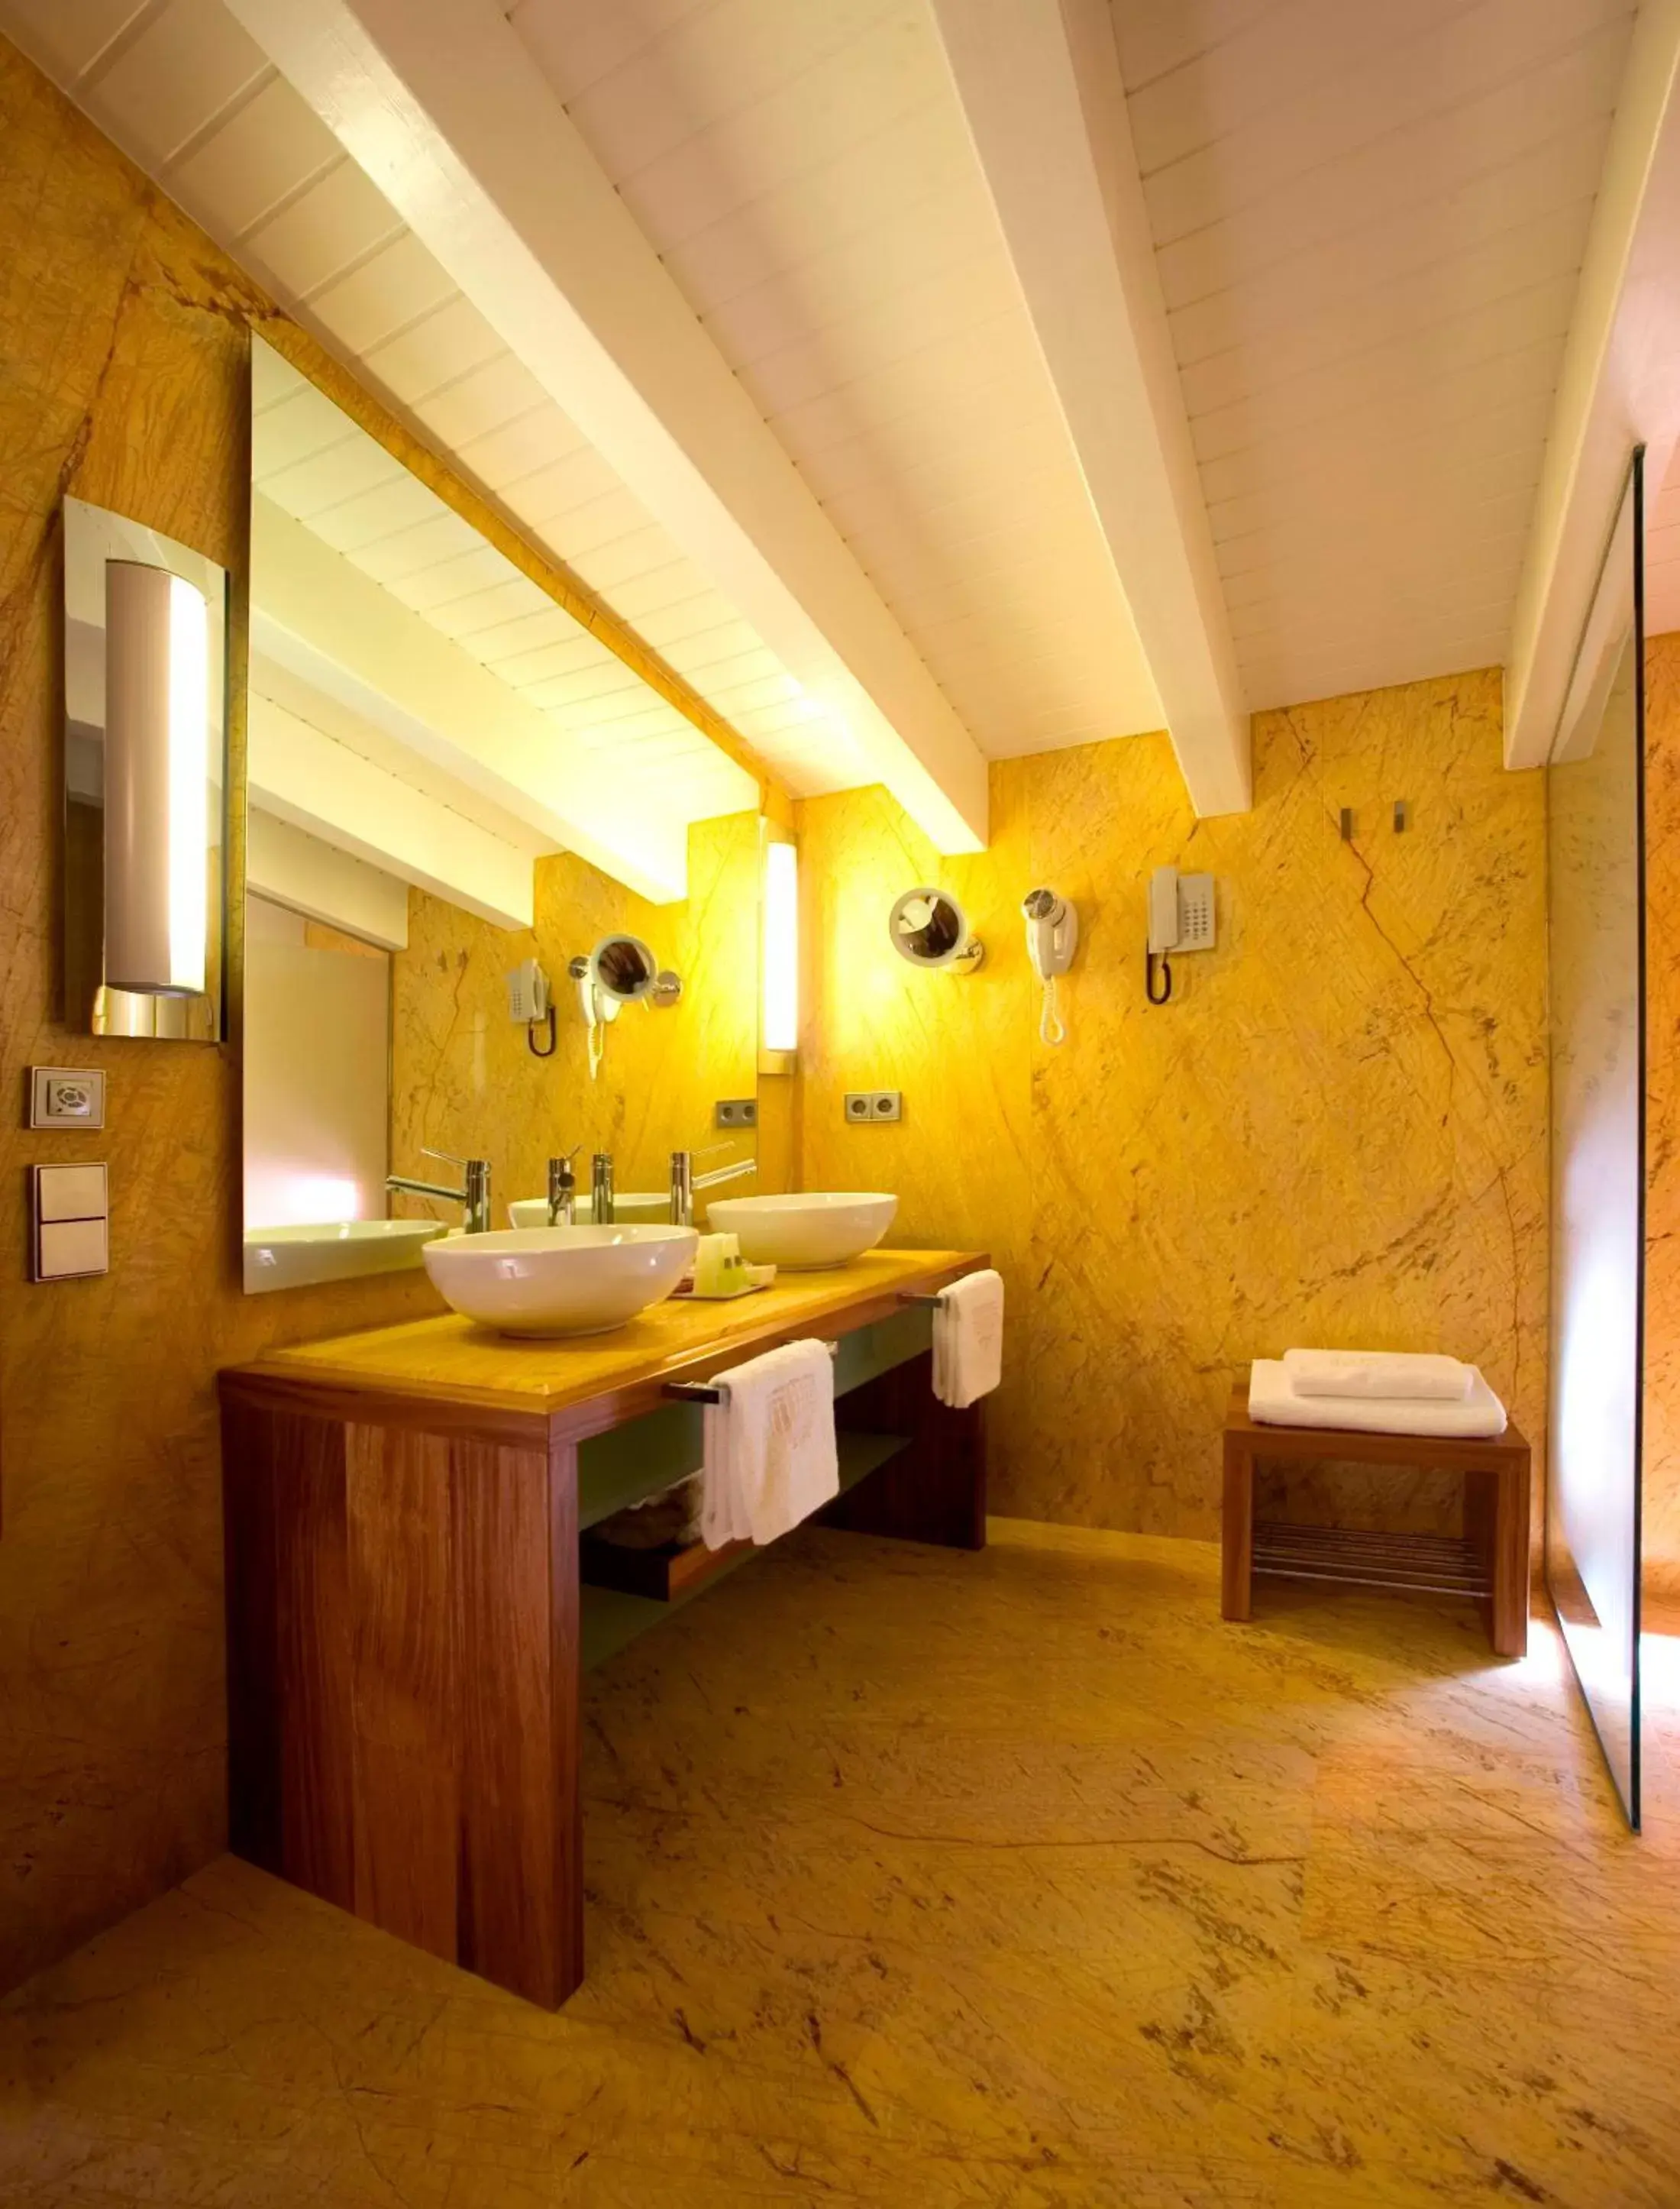 Bathroom in Mirador de Dalt Vila-Relais & Chateaux